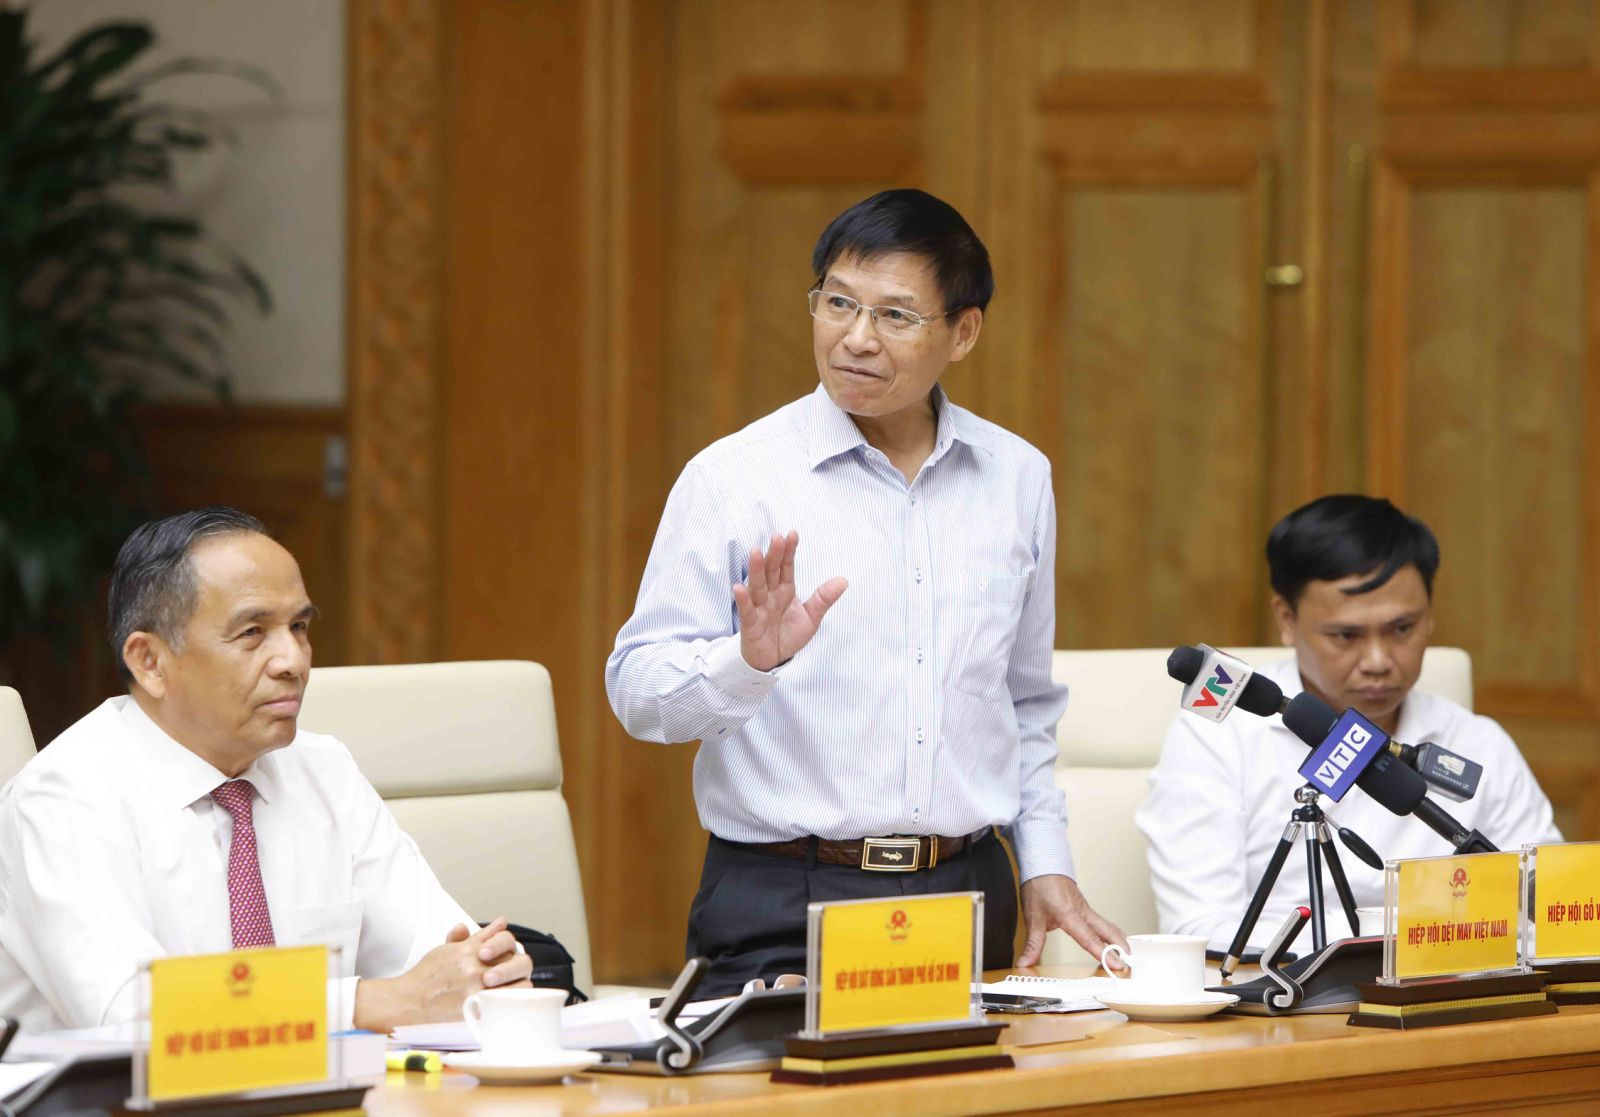 Phó Thủ tướng Lê Minh Khái chủ trì họp bàn giải pháp nâng cao khả năng tiếp cận tín dụng của người dân, doanh nghiệp - Ảnh 6.